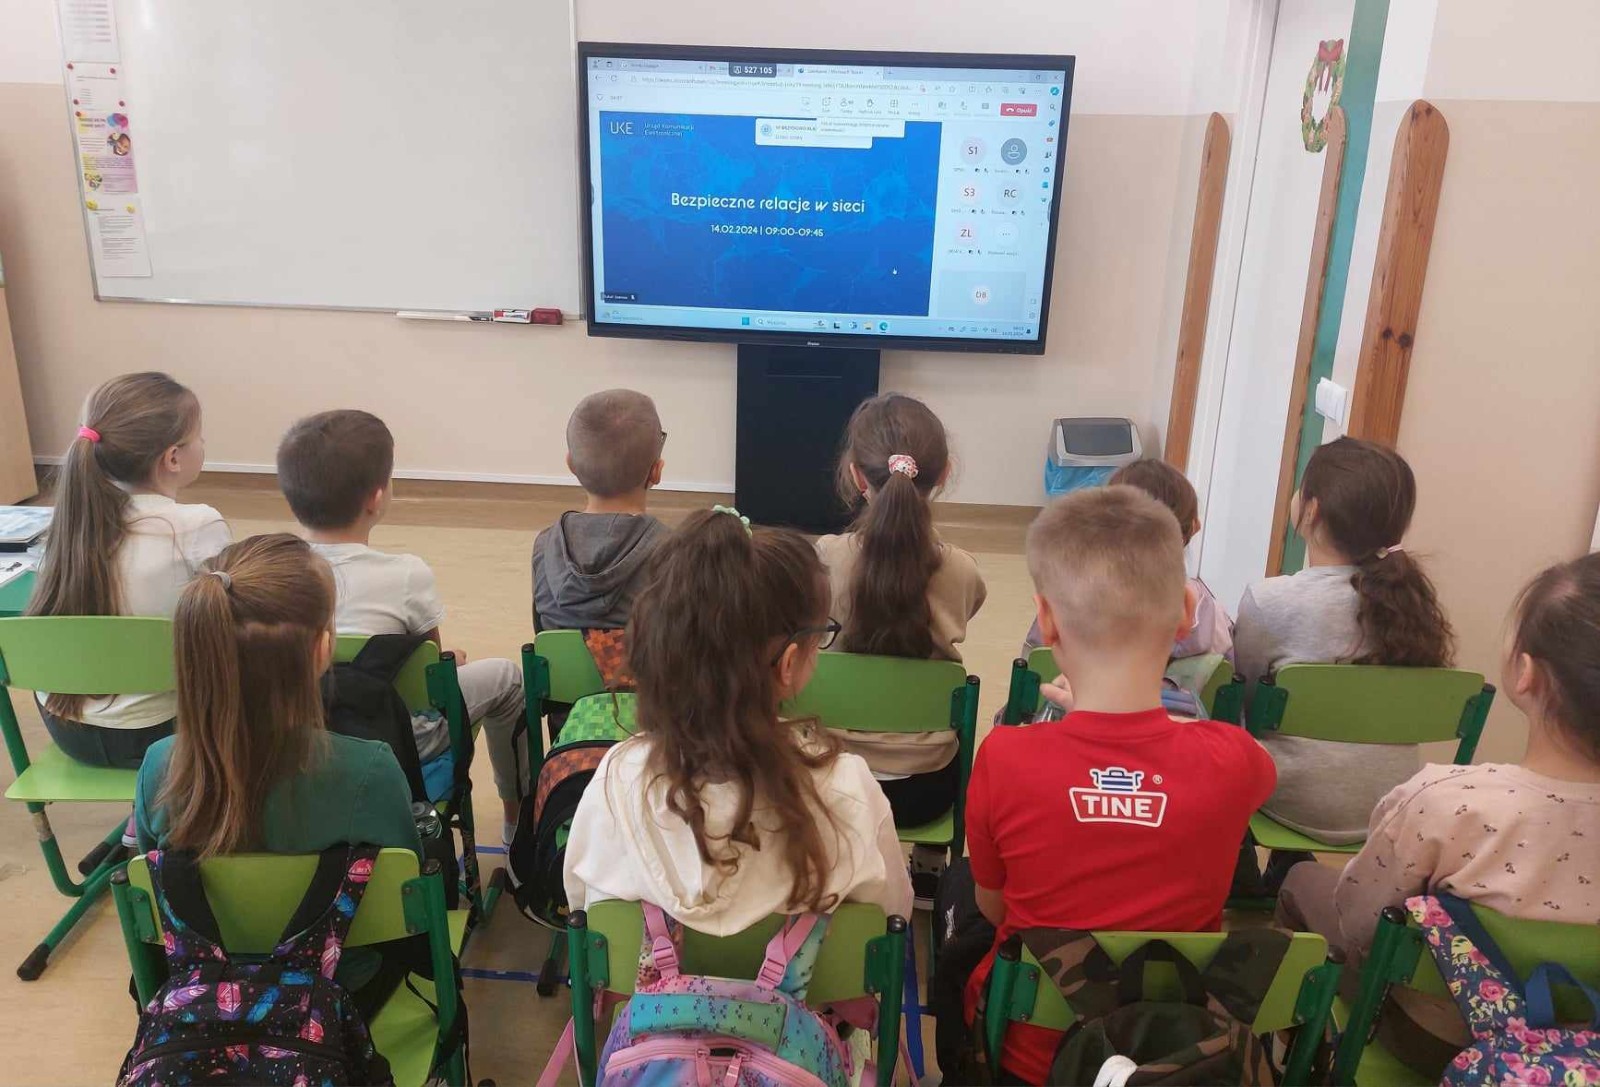 Grupa uczniów siedząca na krzesełkach i oglądająca na monitorze interaktywnym webinar Bezpieczne relacje w sieci